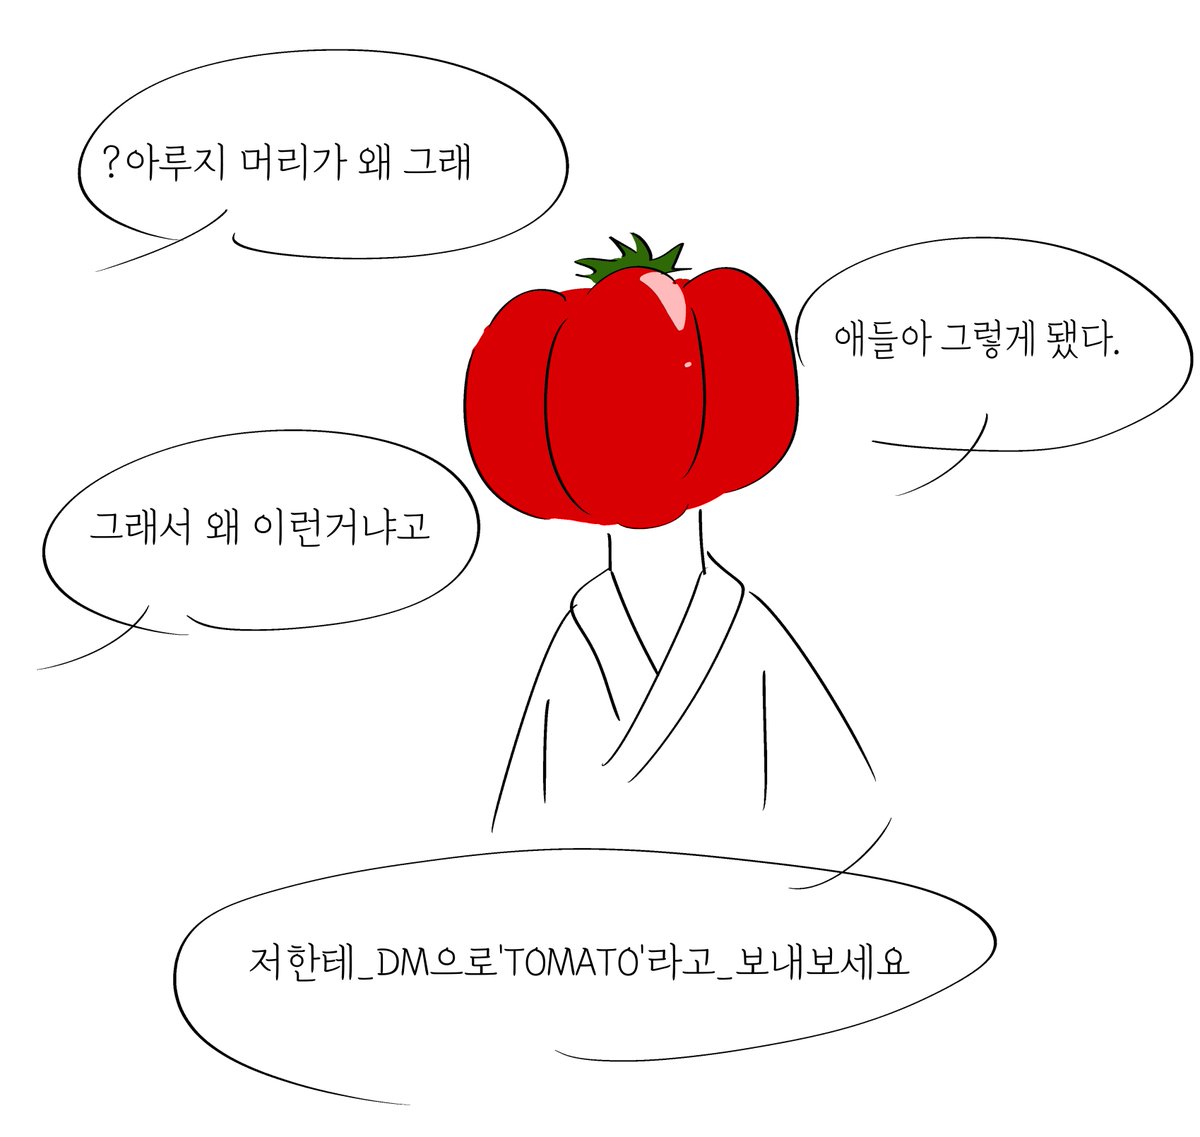 저 한테 dm 으로 tomato 라고 말해 보세요